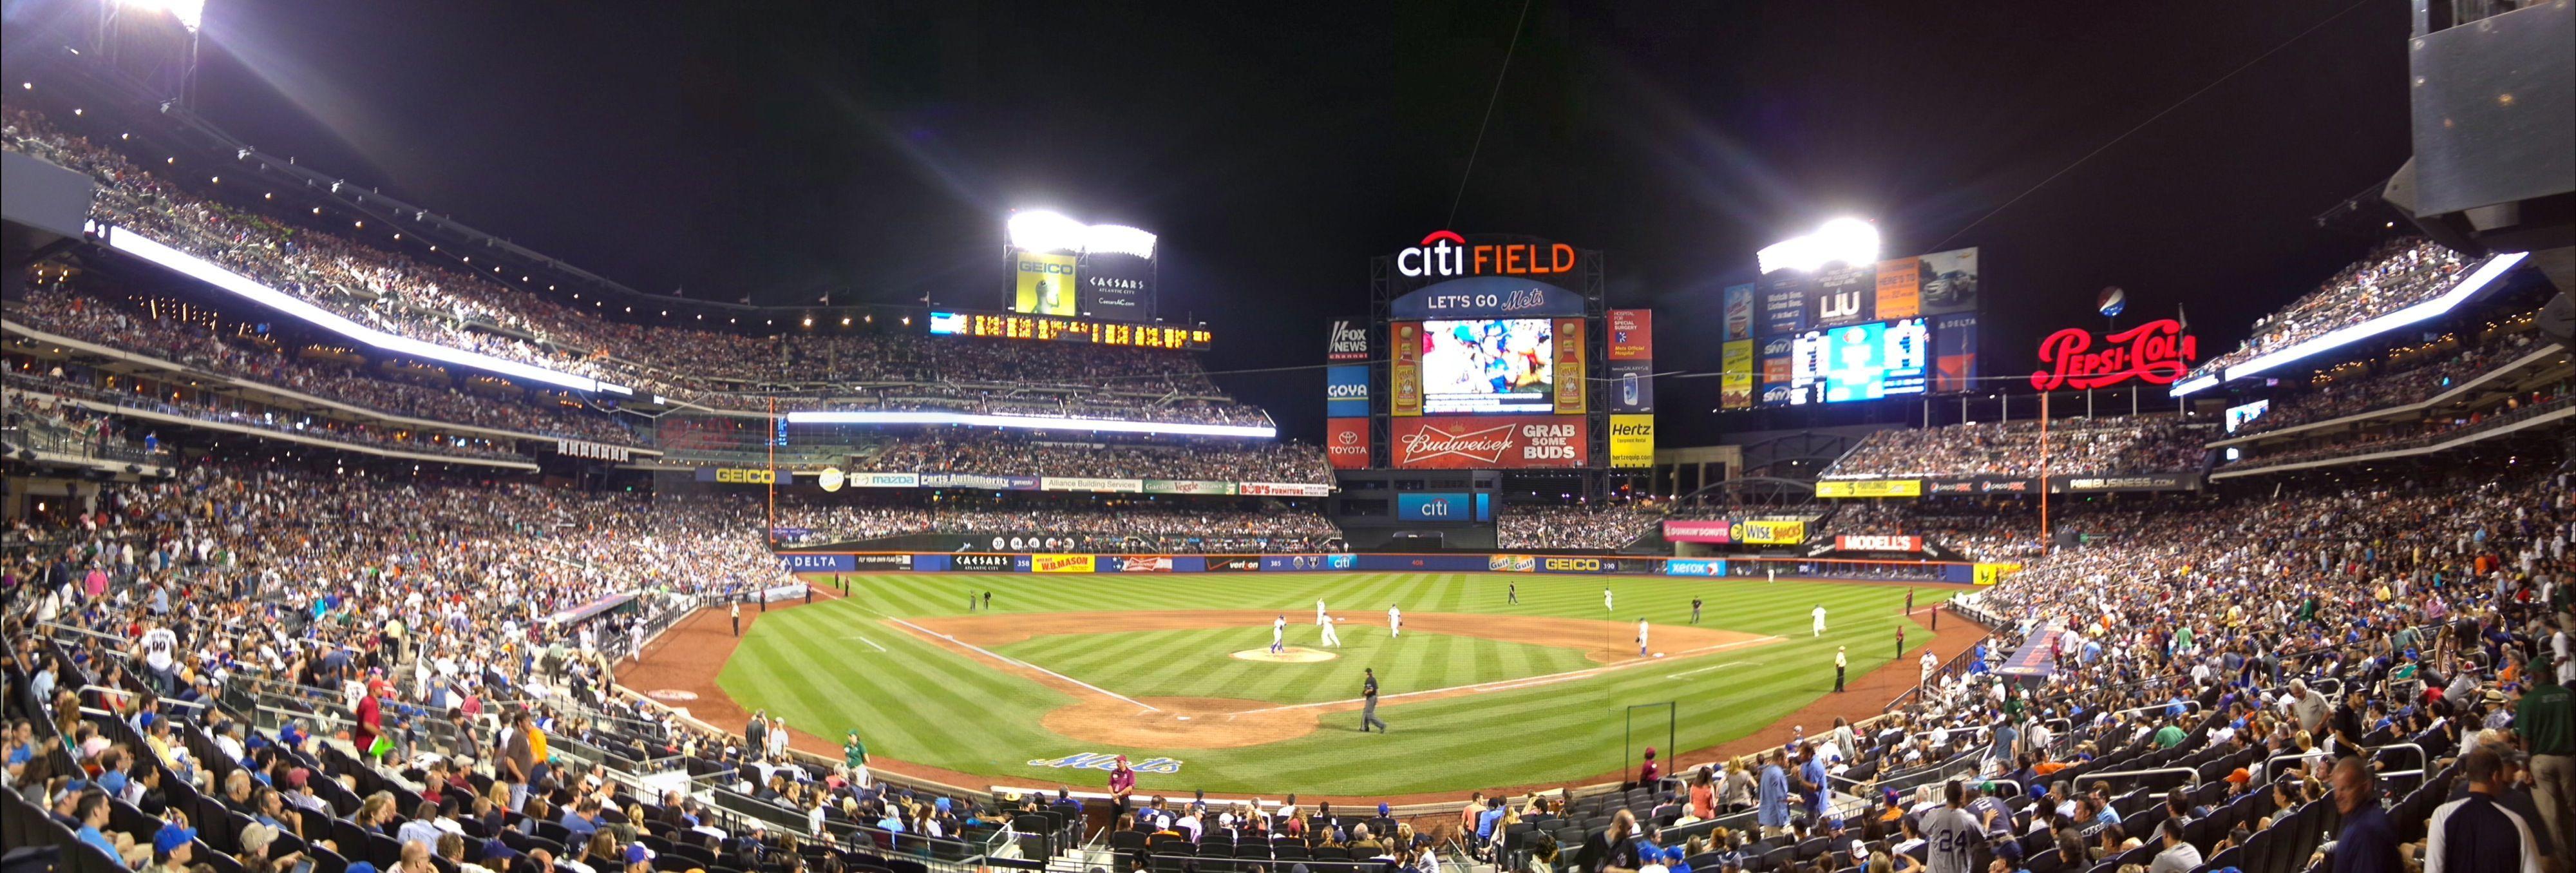 Citi Field. /uploads/2012/07/MLB.